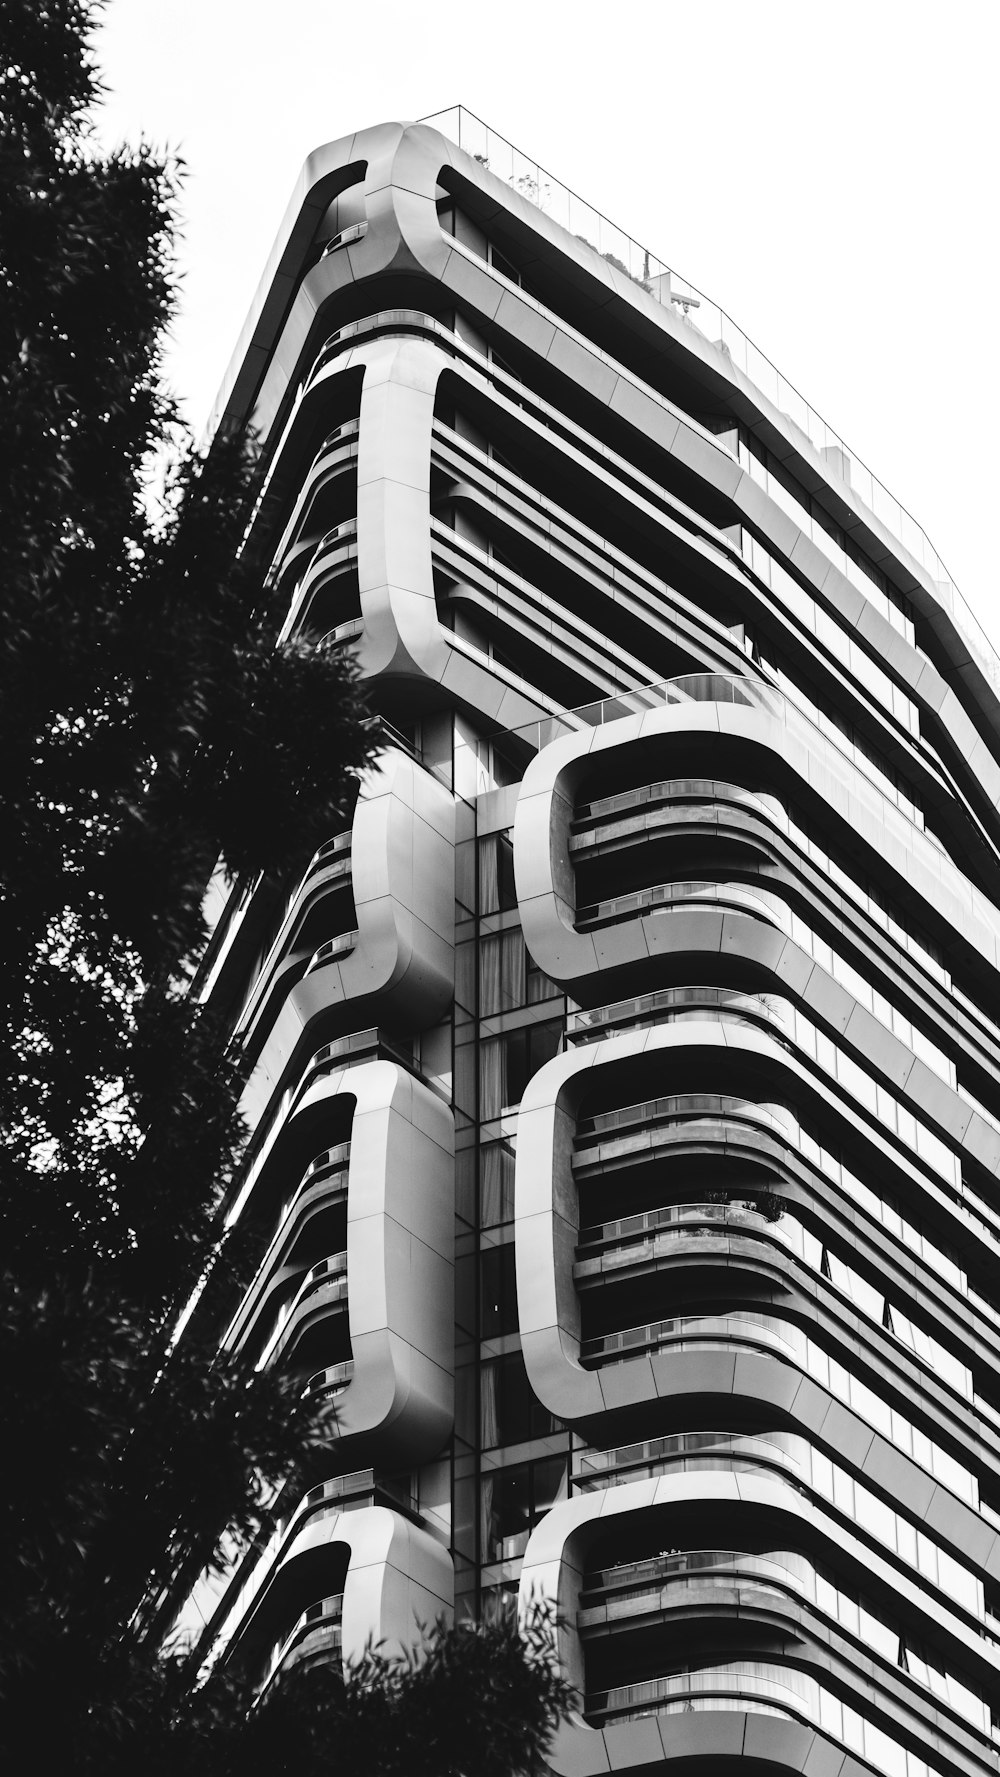 콘크리트 건물의 회색조 및 저각 사진